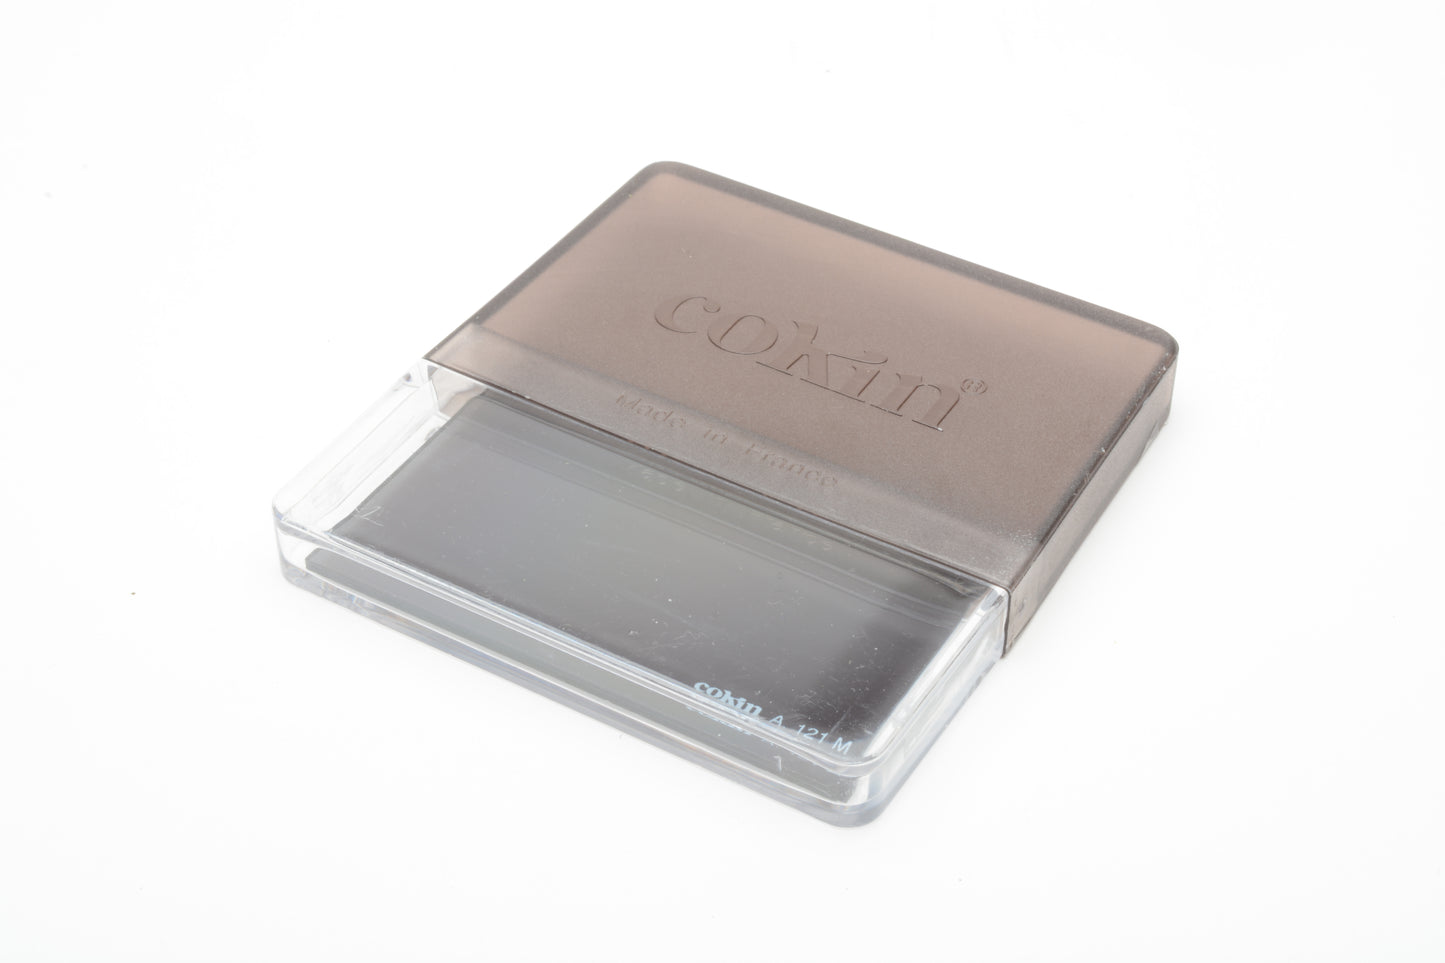 Cokin A Series A121M Graduated Medium Filter in jewel case